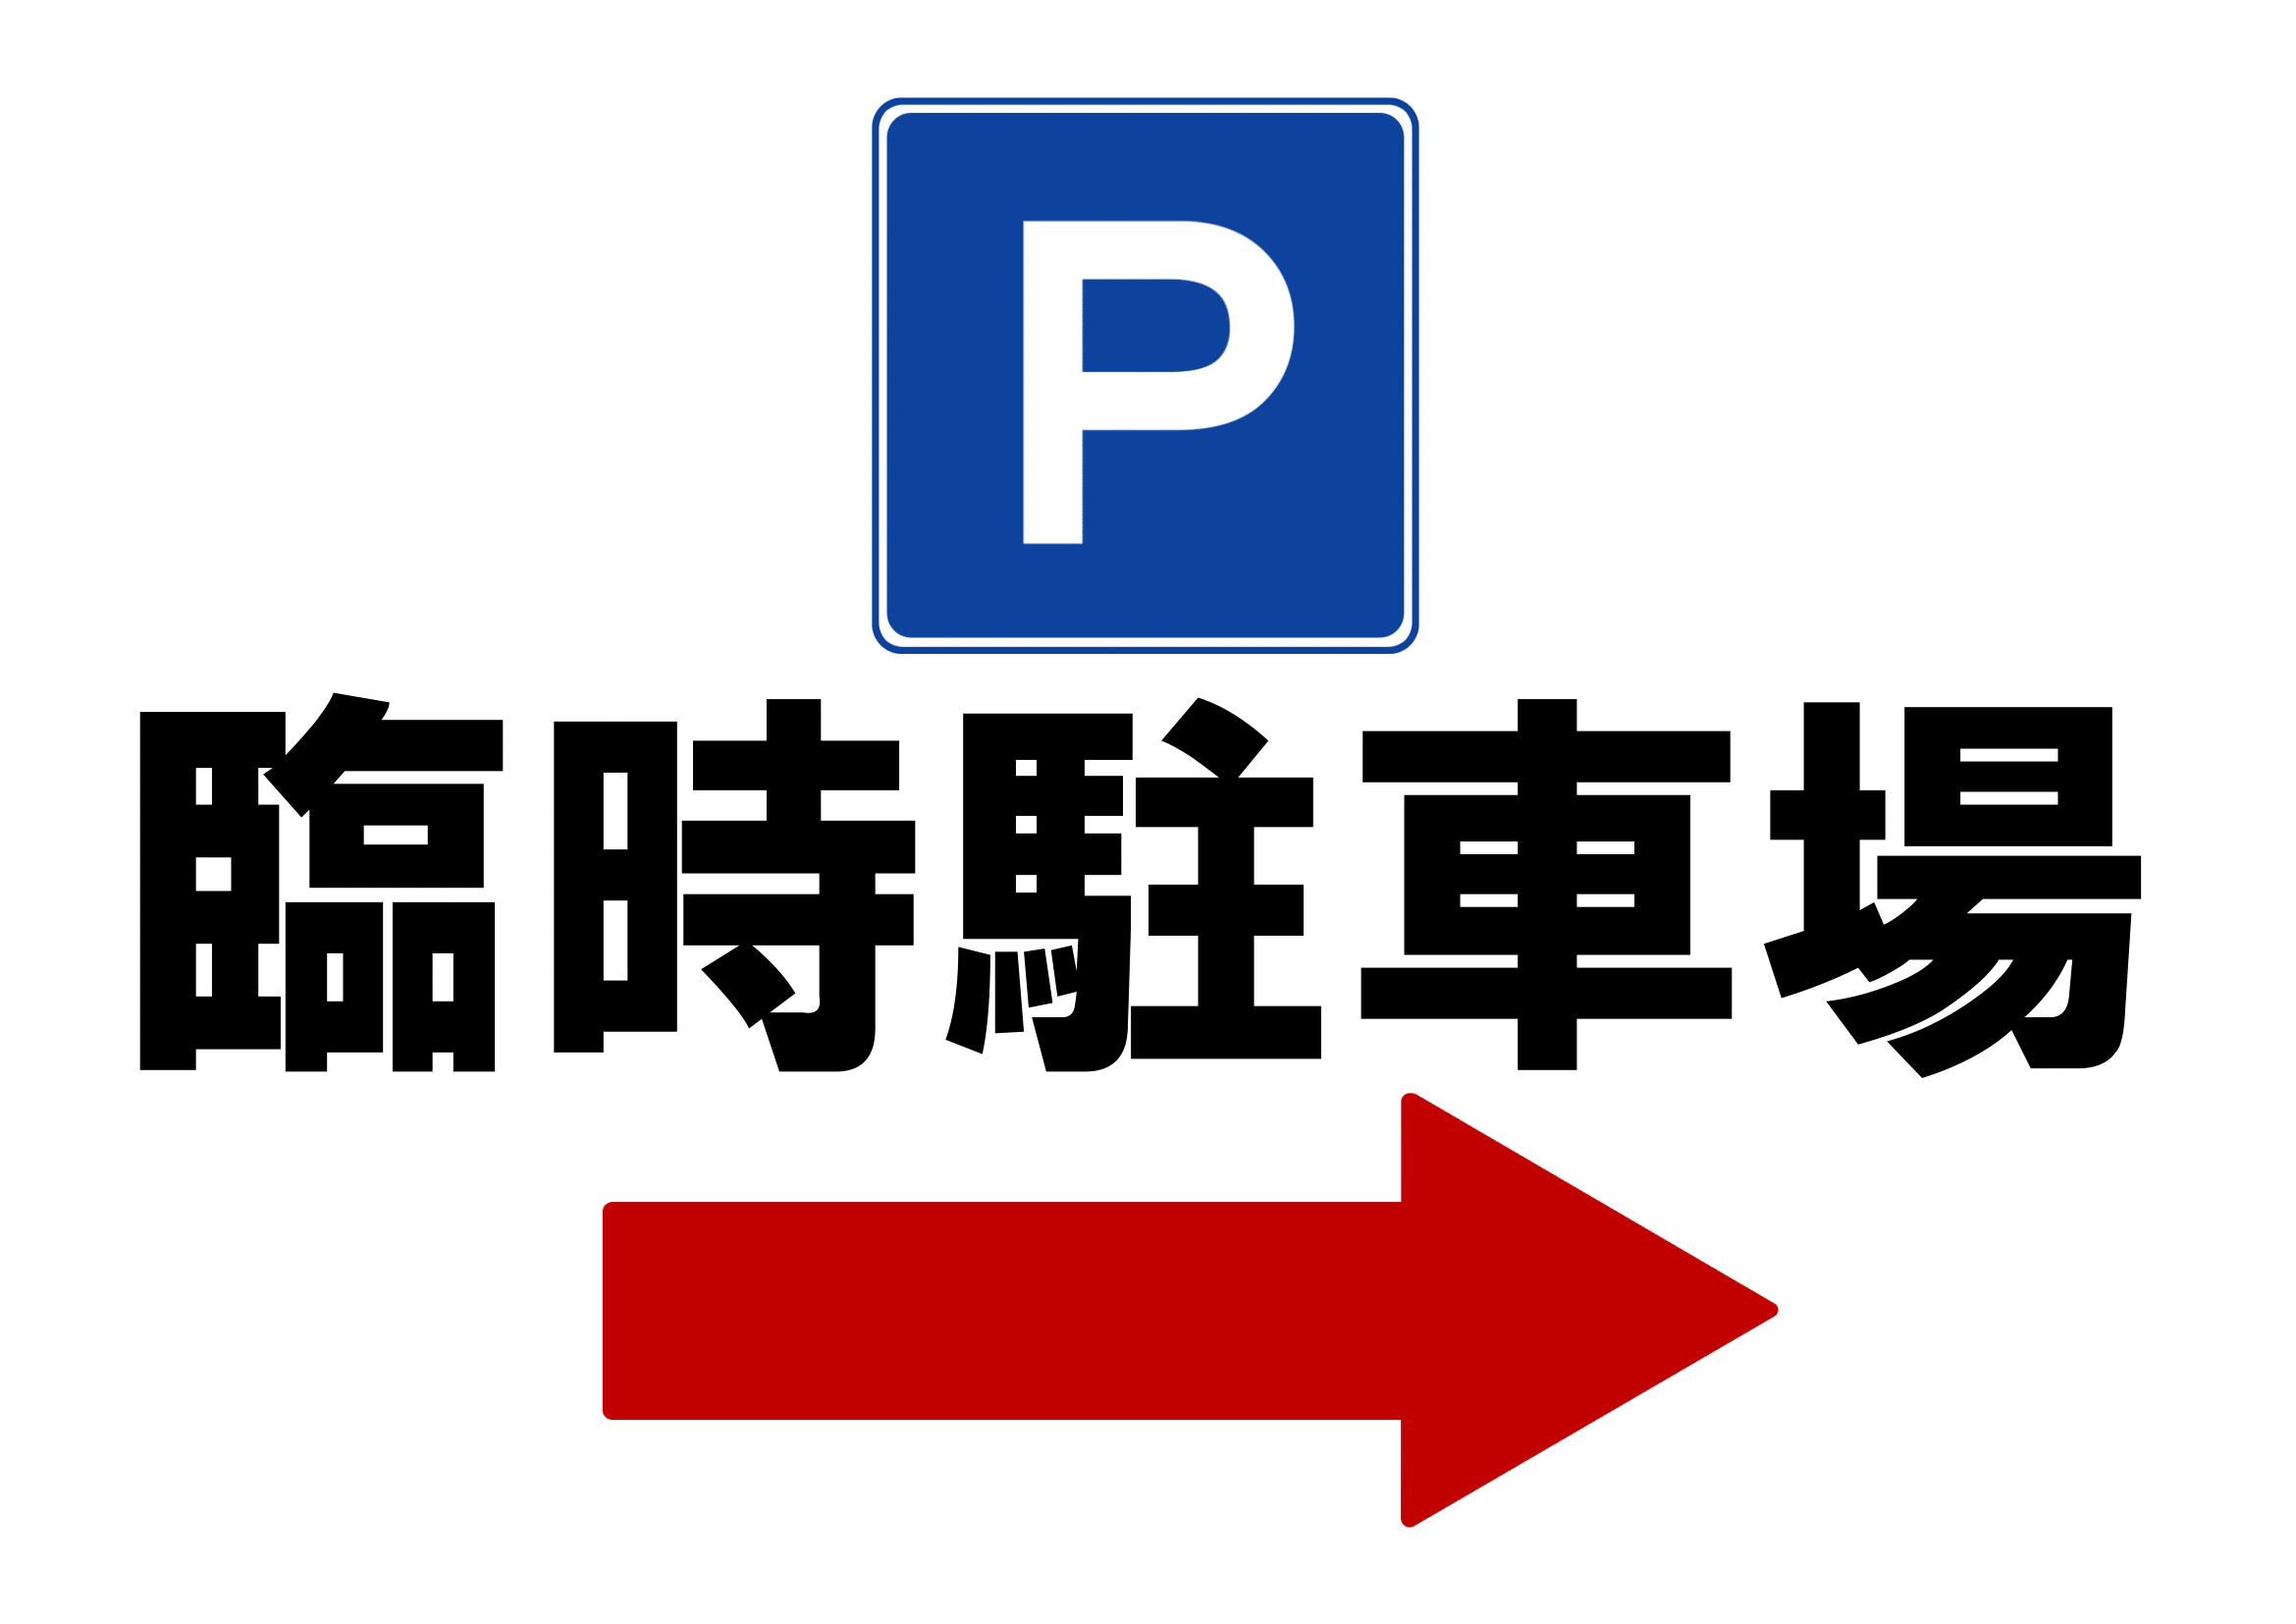 臨時駐車場ご案内の張り紙（Ａ４・ヨコ・方向指示・右）